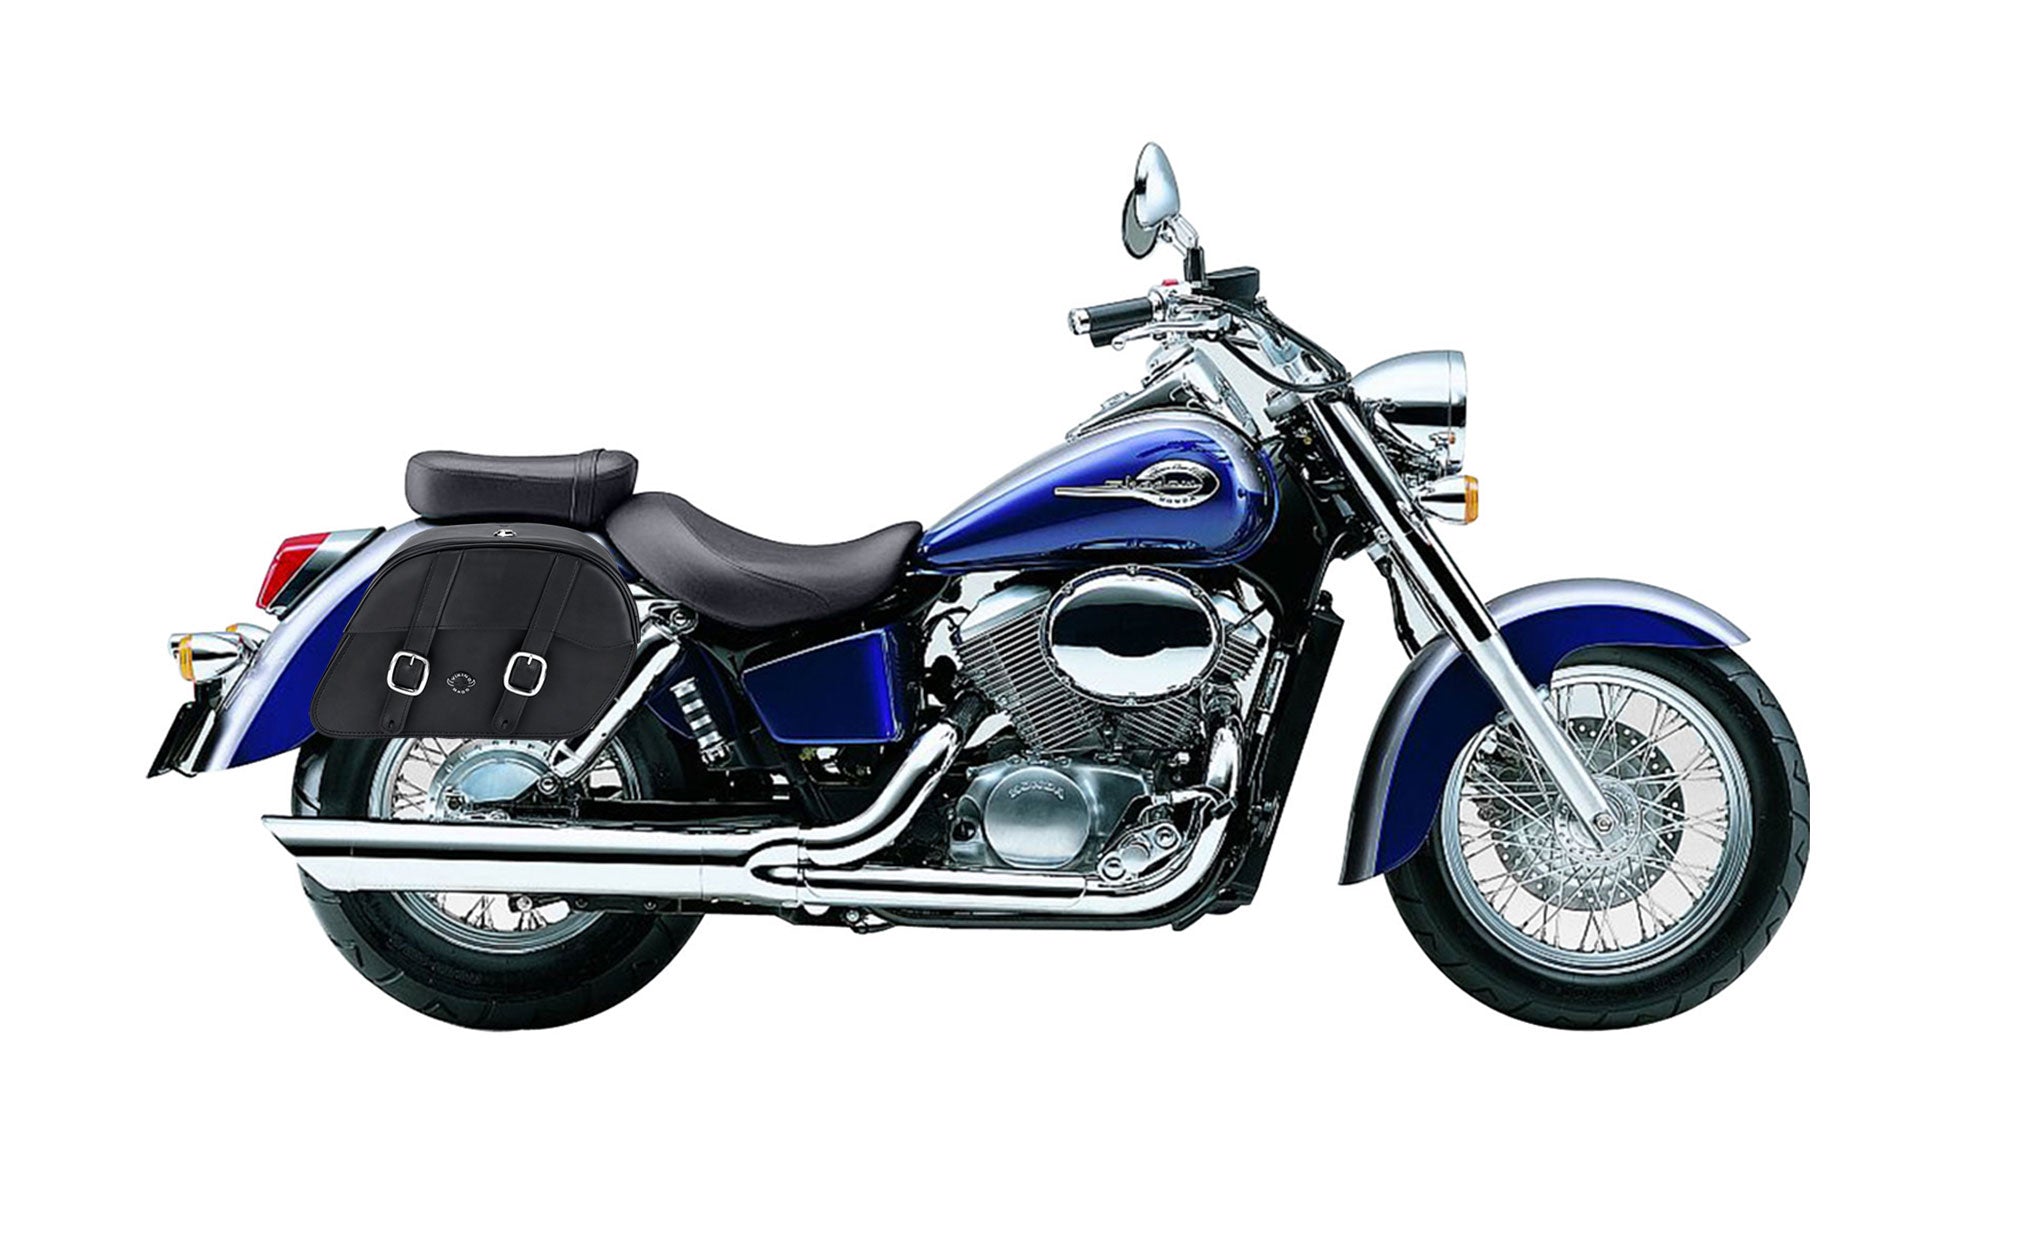 Viking Skarner Medium Lockable Honda Shadow 750 Ace Leather Motorcycle Saddlebags on Bike Photo @expand